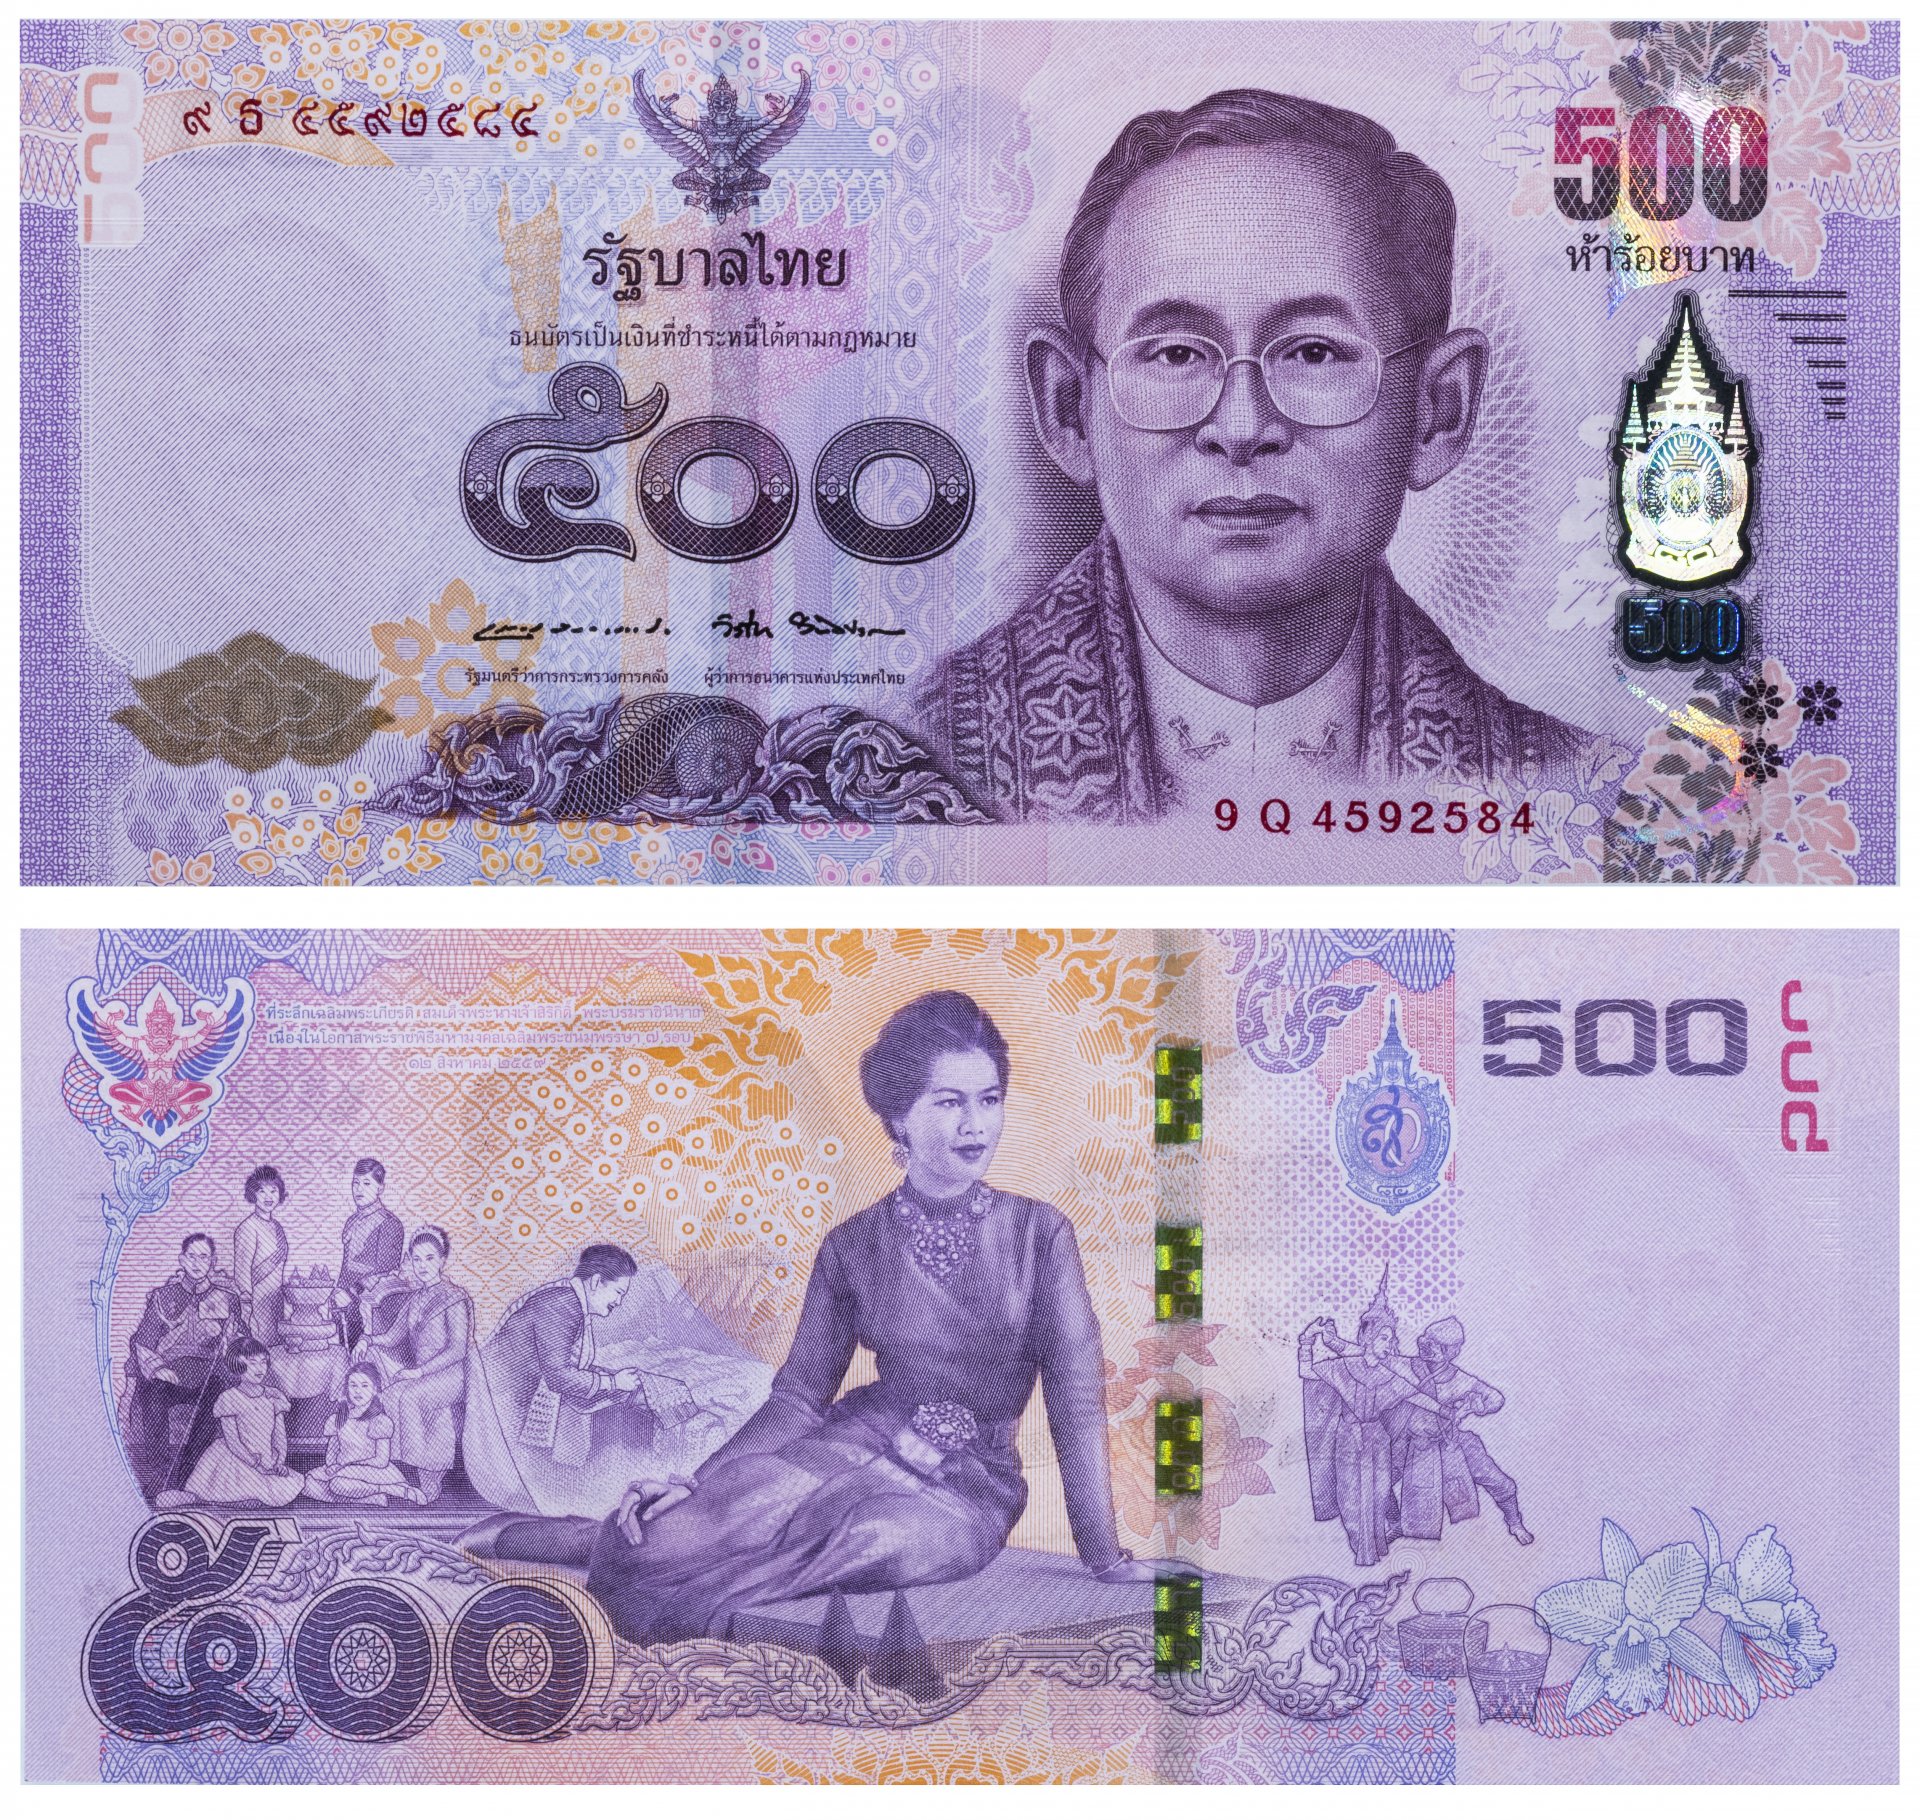 Деньги в бангкоке. 500 Бат Тайланд купюра. Банкноты Тайланда 100 бат. Таиланд банкнота 1956 10 бат рама IX. Таиланд банкнота 1969 10 бат рама IX.